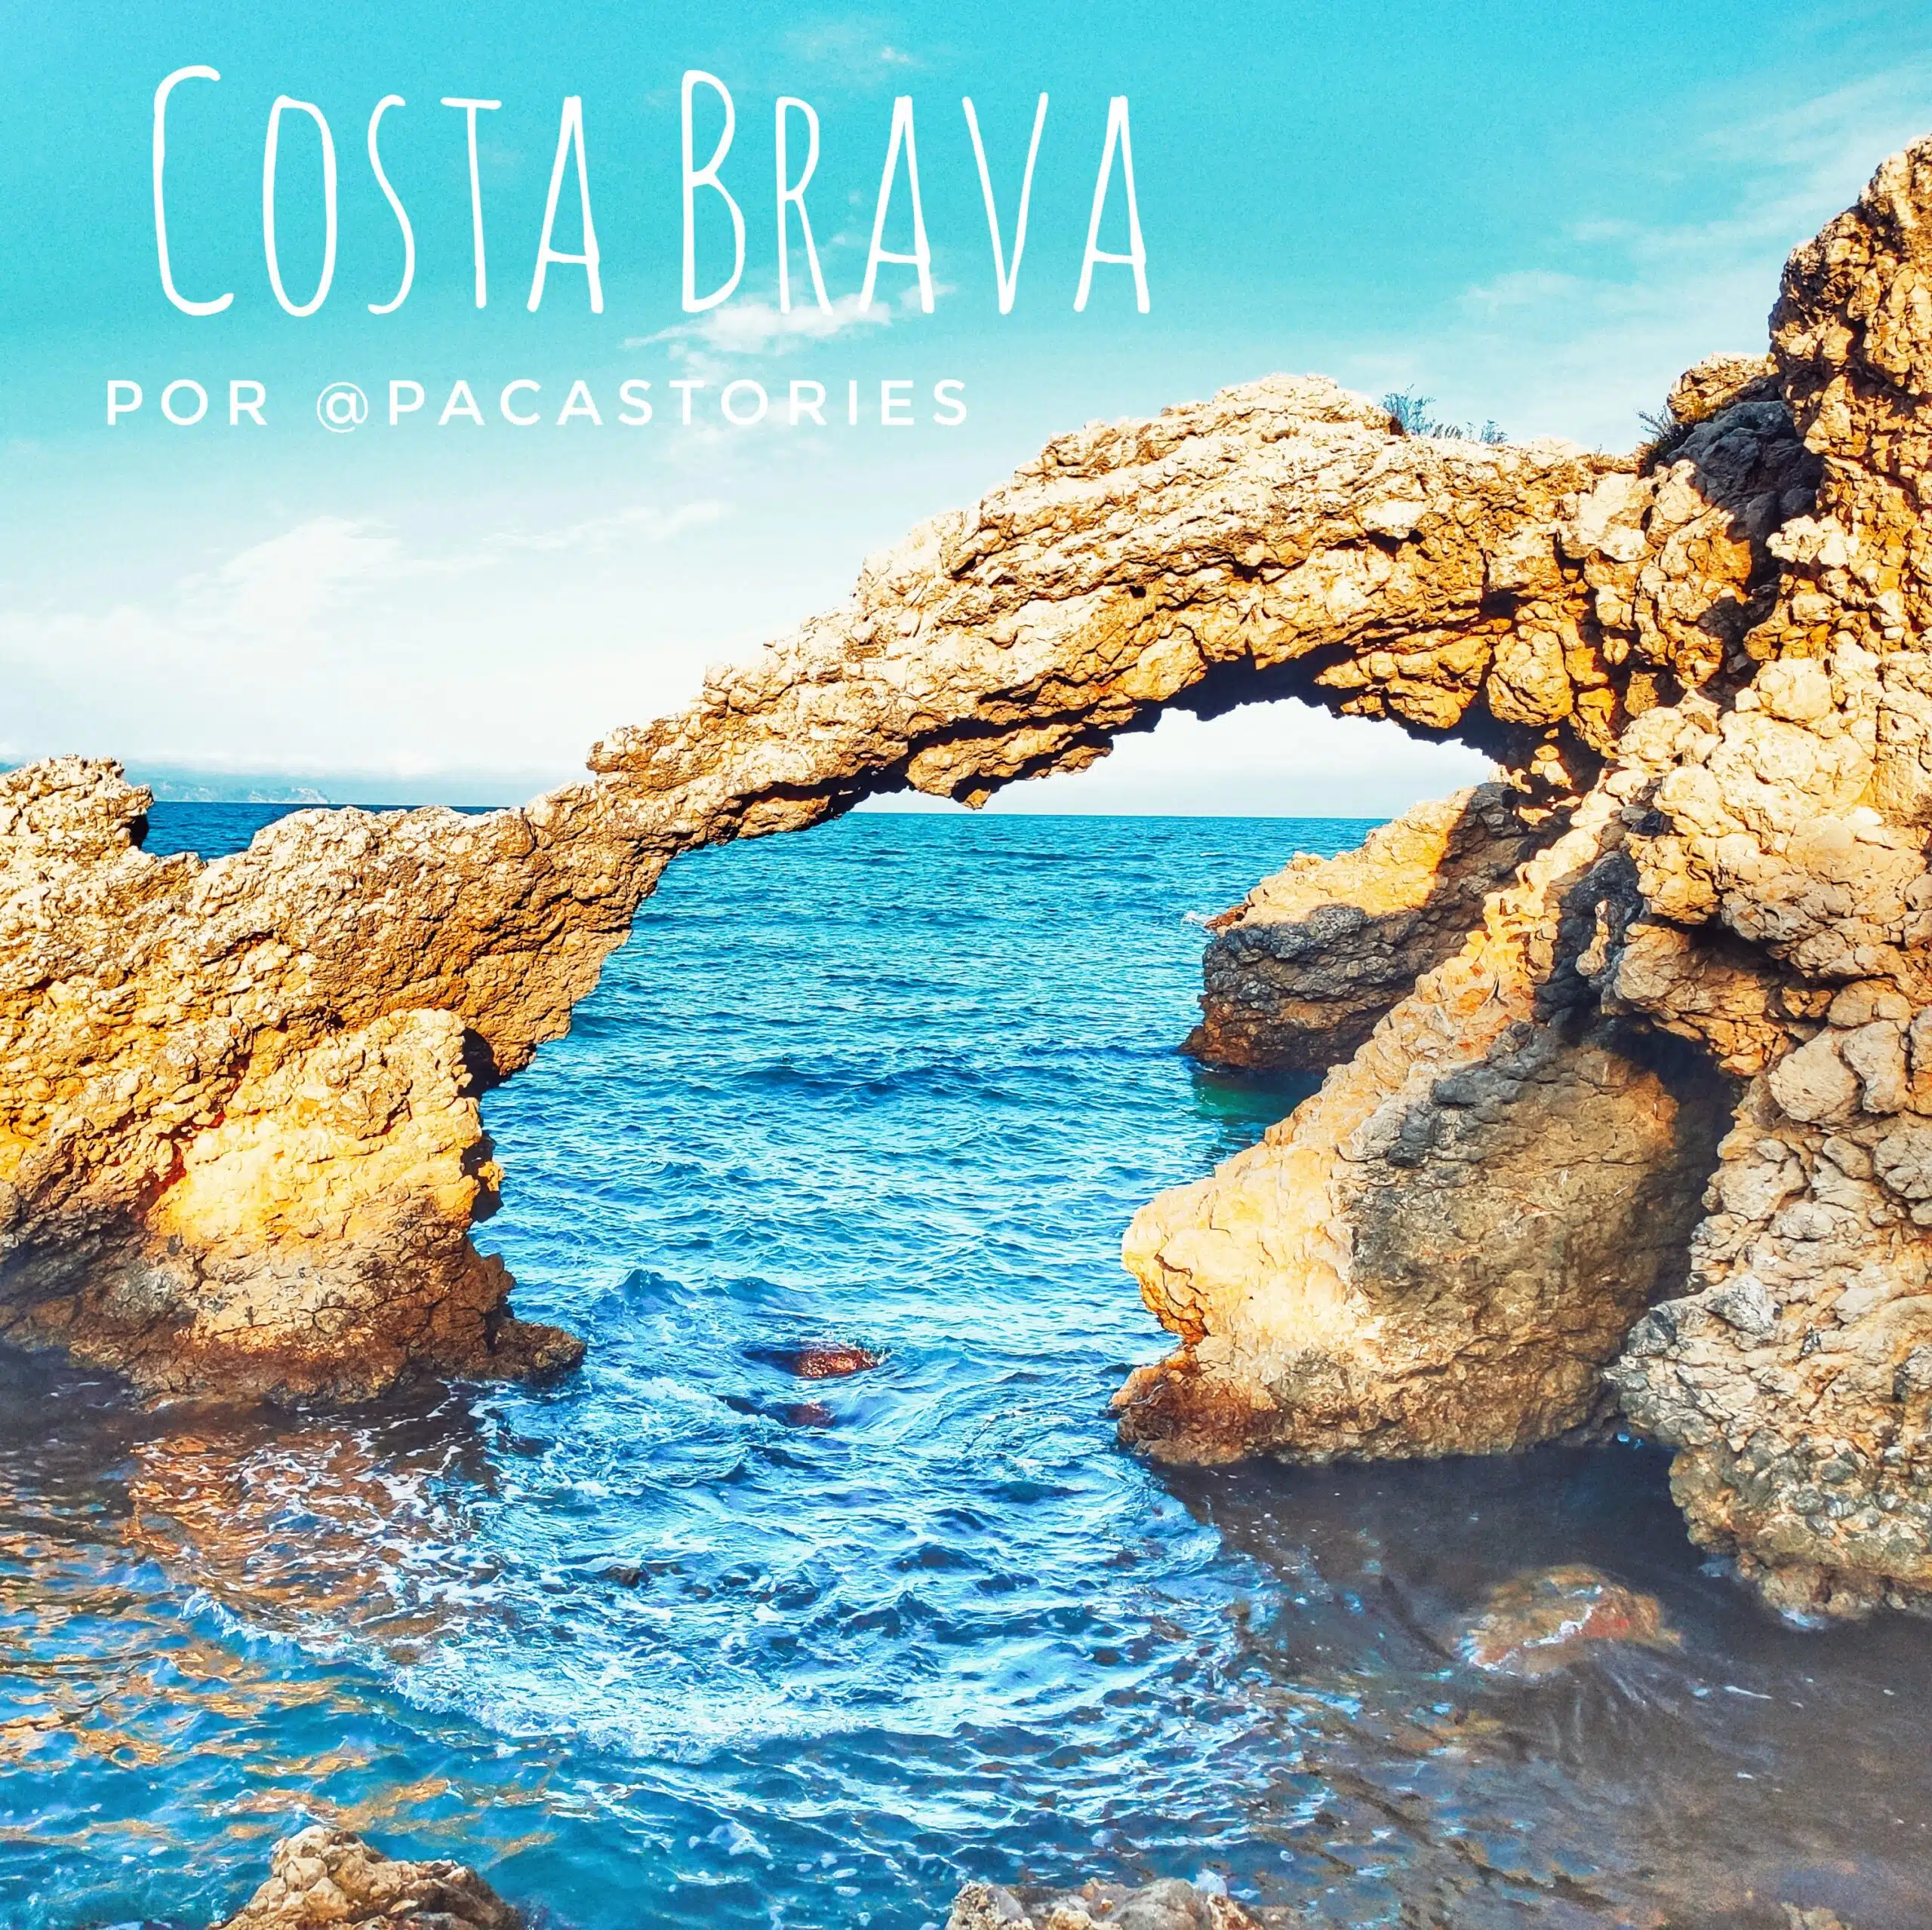 17 unglaubliche Reiseziele, um die Costa Brava mit dem Wohnmobil zu entdecken